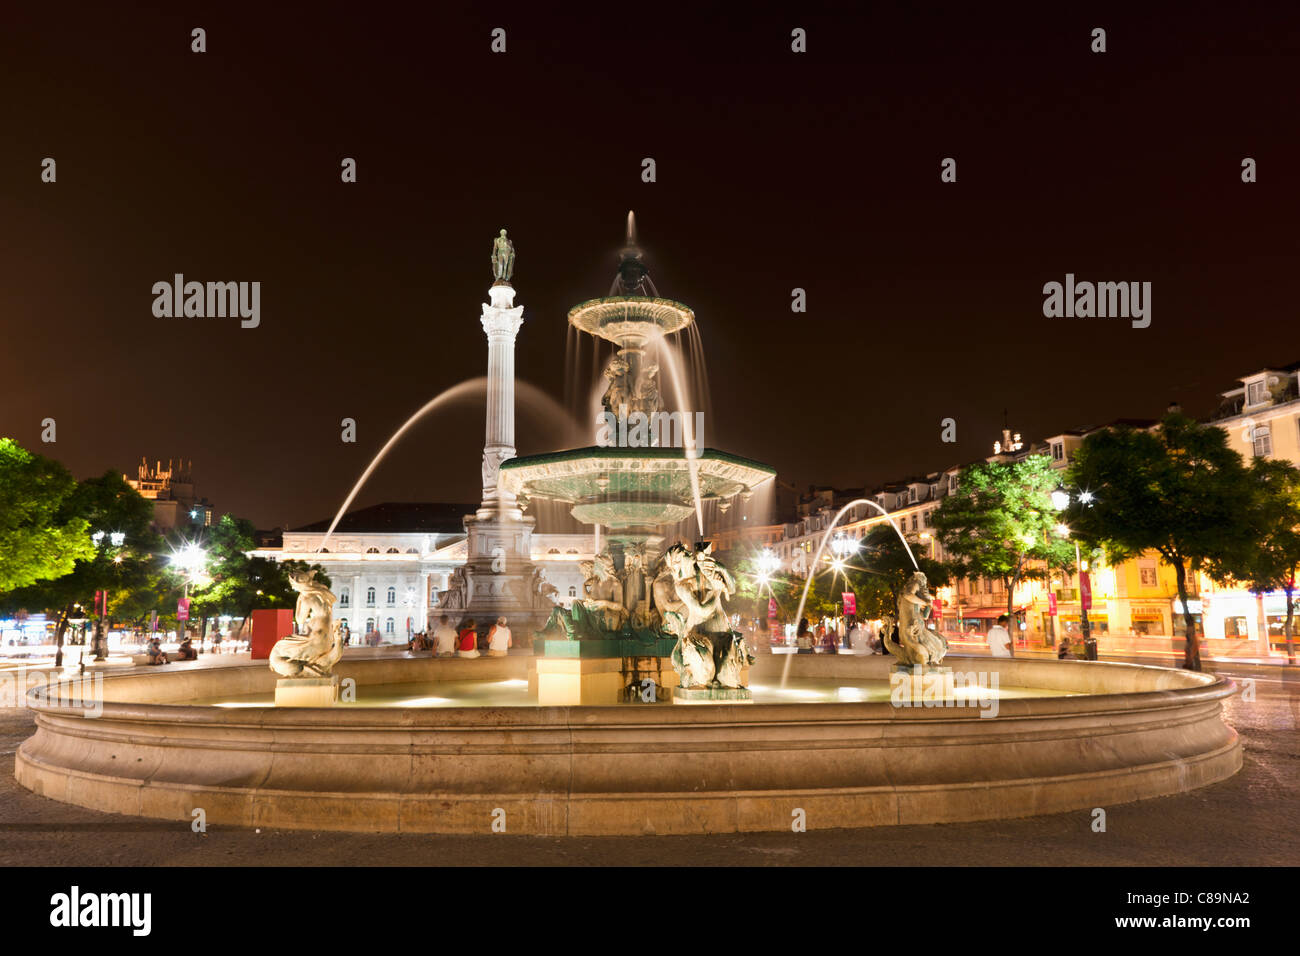 Europa, Portugal, Lissabon, Baixa, Blick auf Bronze Brunnen und Statue von König Pedro IV in Rossio in der Nacht Stockfoto